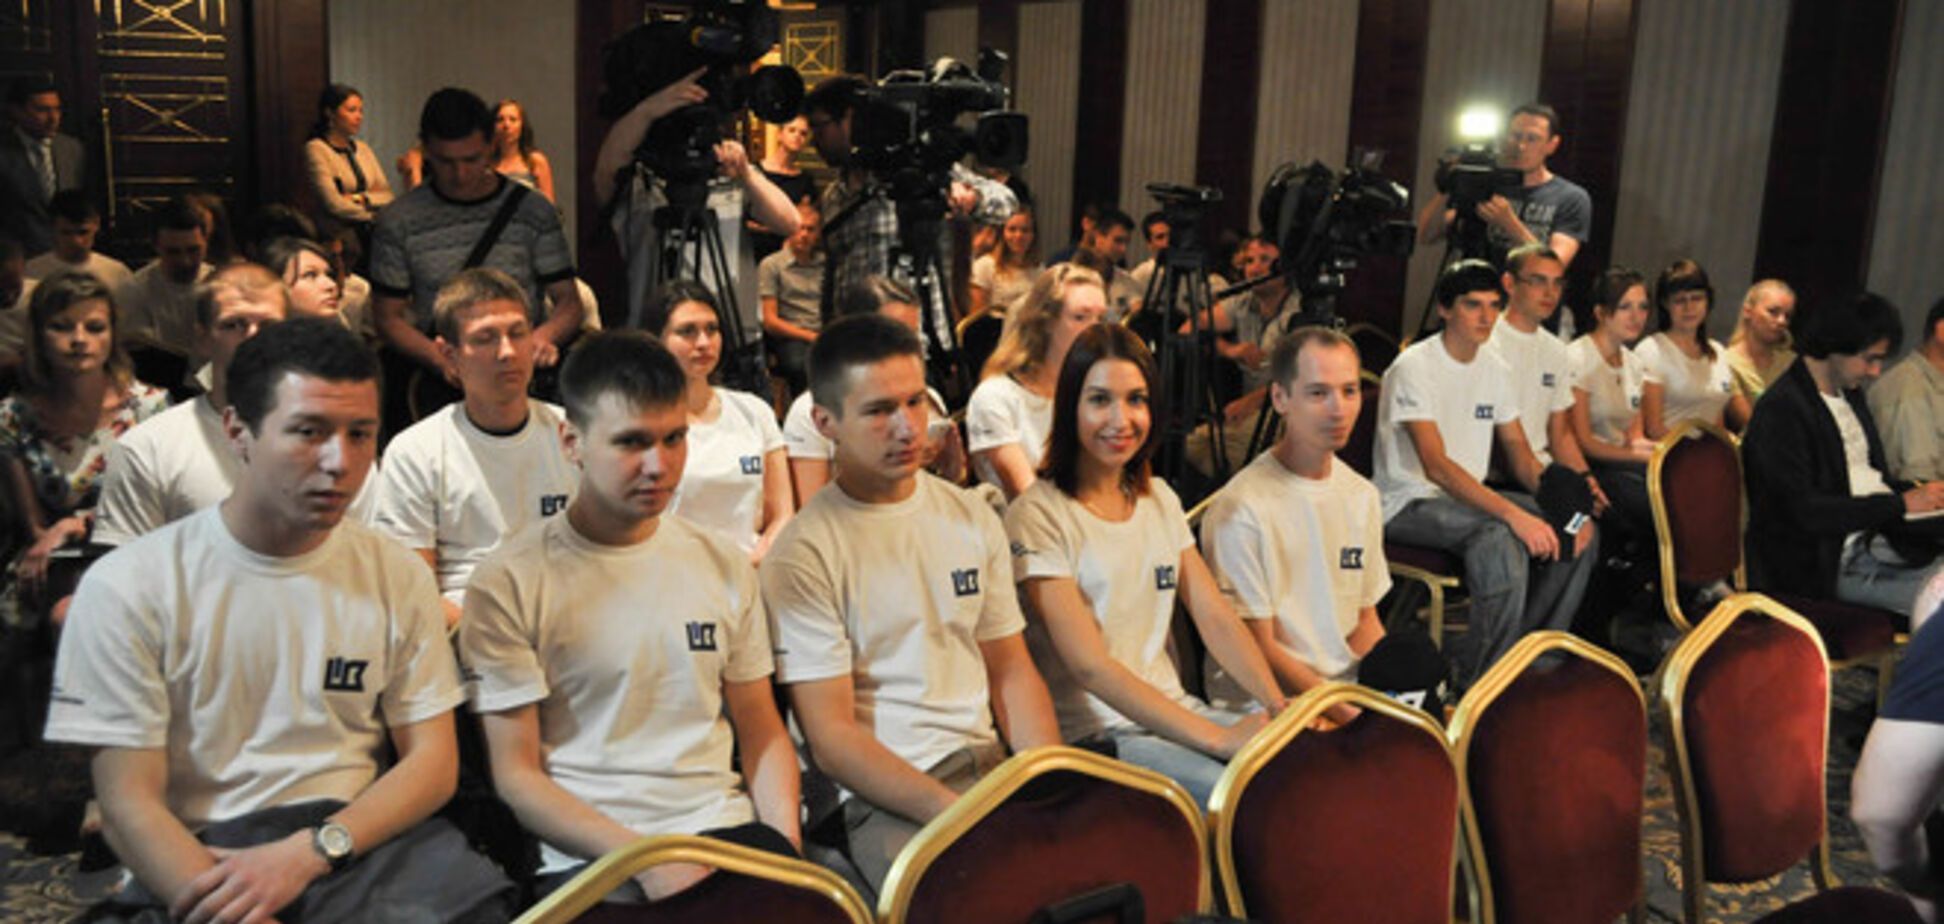 20 українських студентів поїдуть на всесвітньо відомий авіасалон 'Фарнборо'